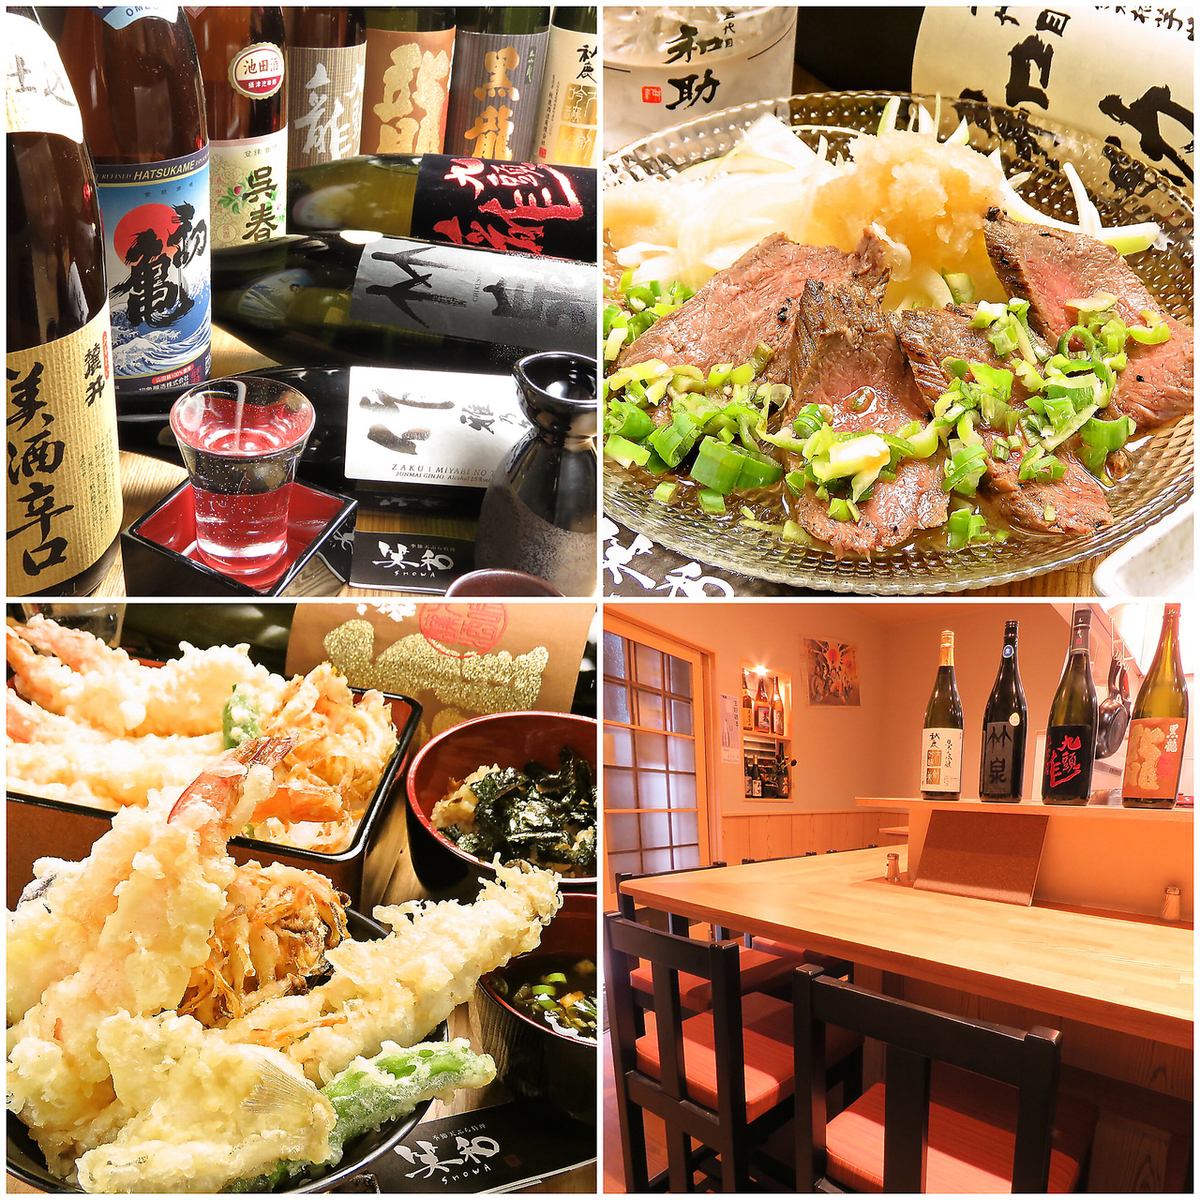 【箕面 桜井】天ぷらと日本酒が肩張らず気軽に楽しめる天ぷら居酒屋